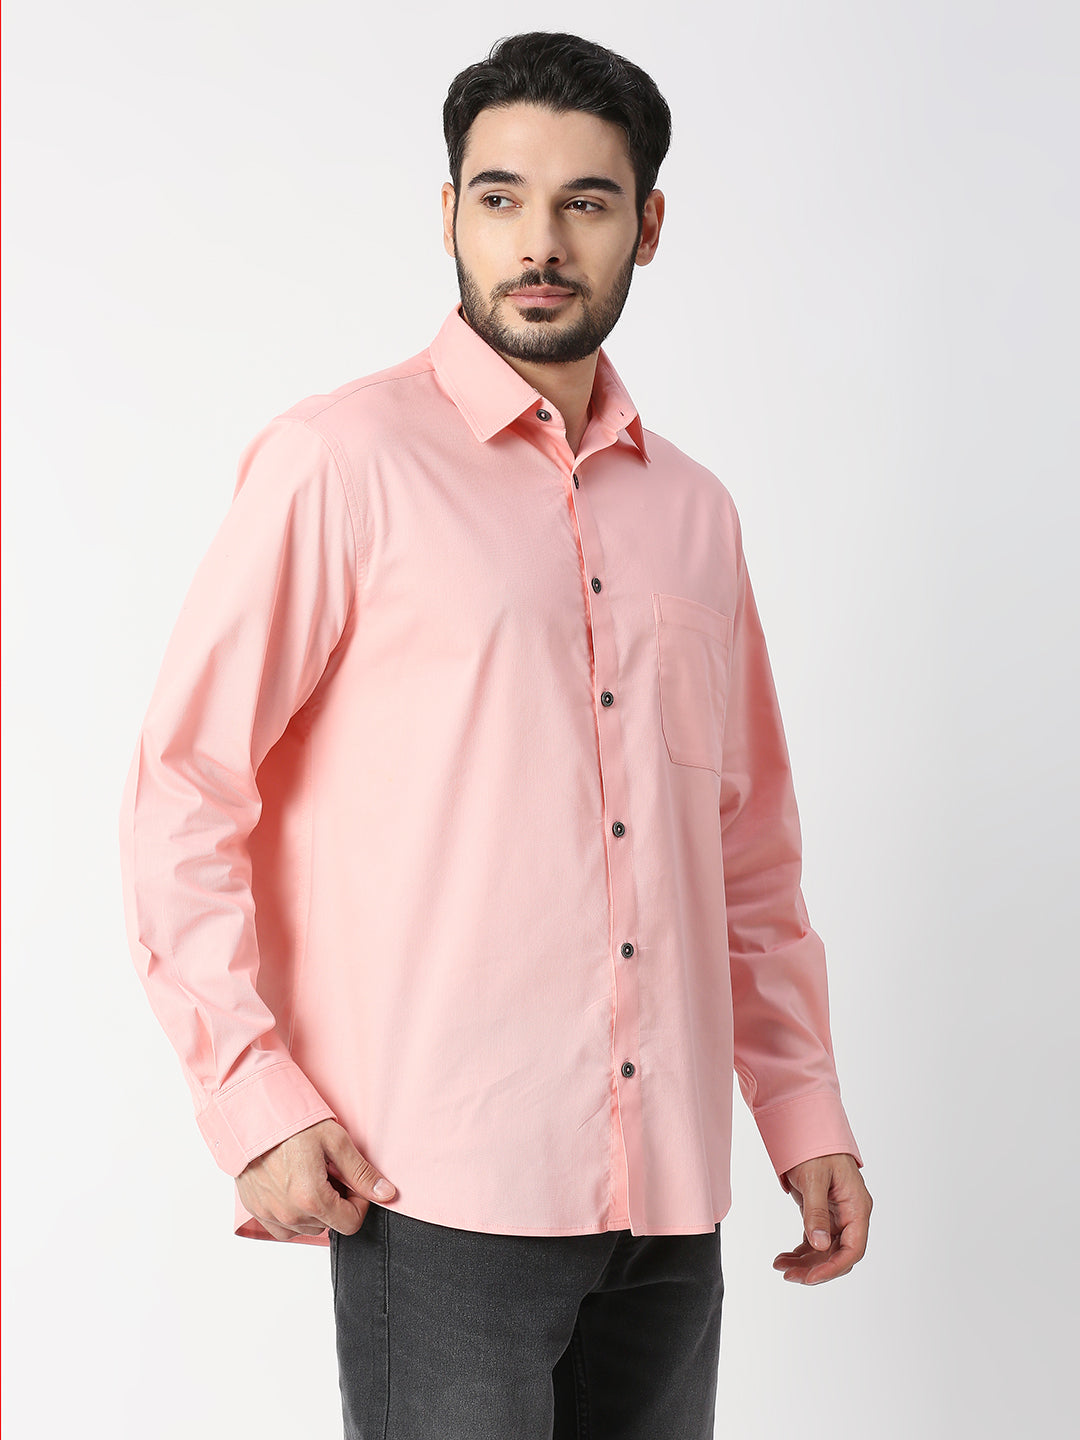 Buy Blamblack Peach Color Solid Regular Shirt.